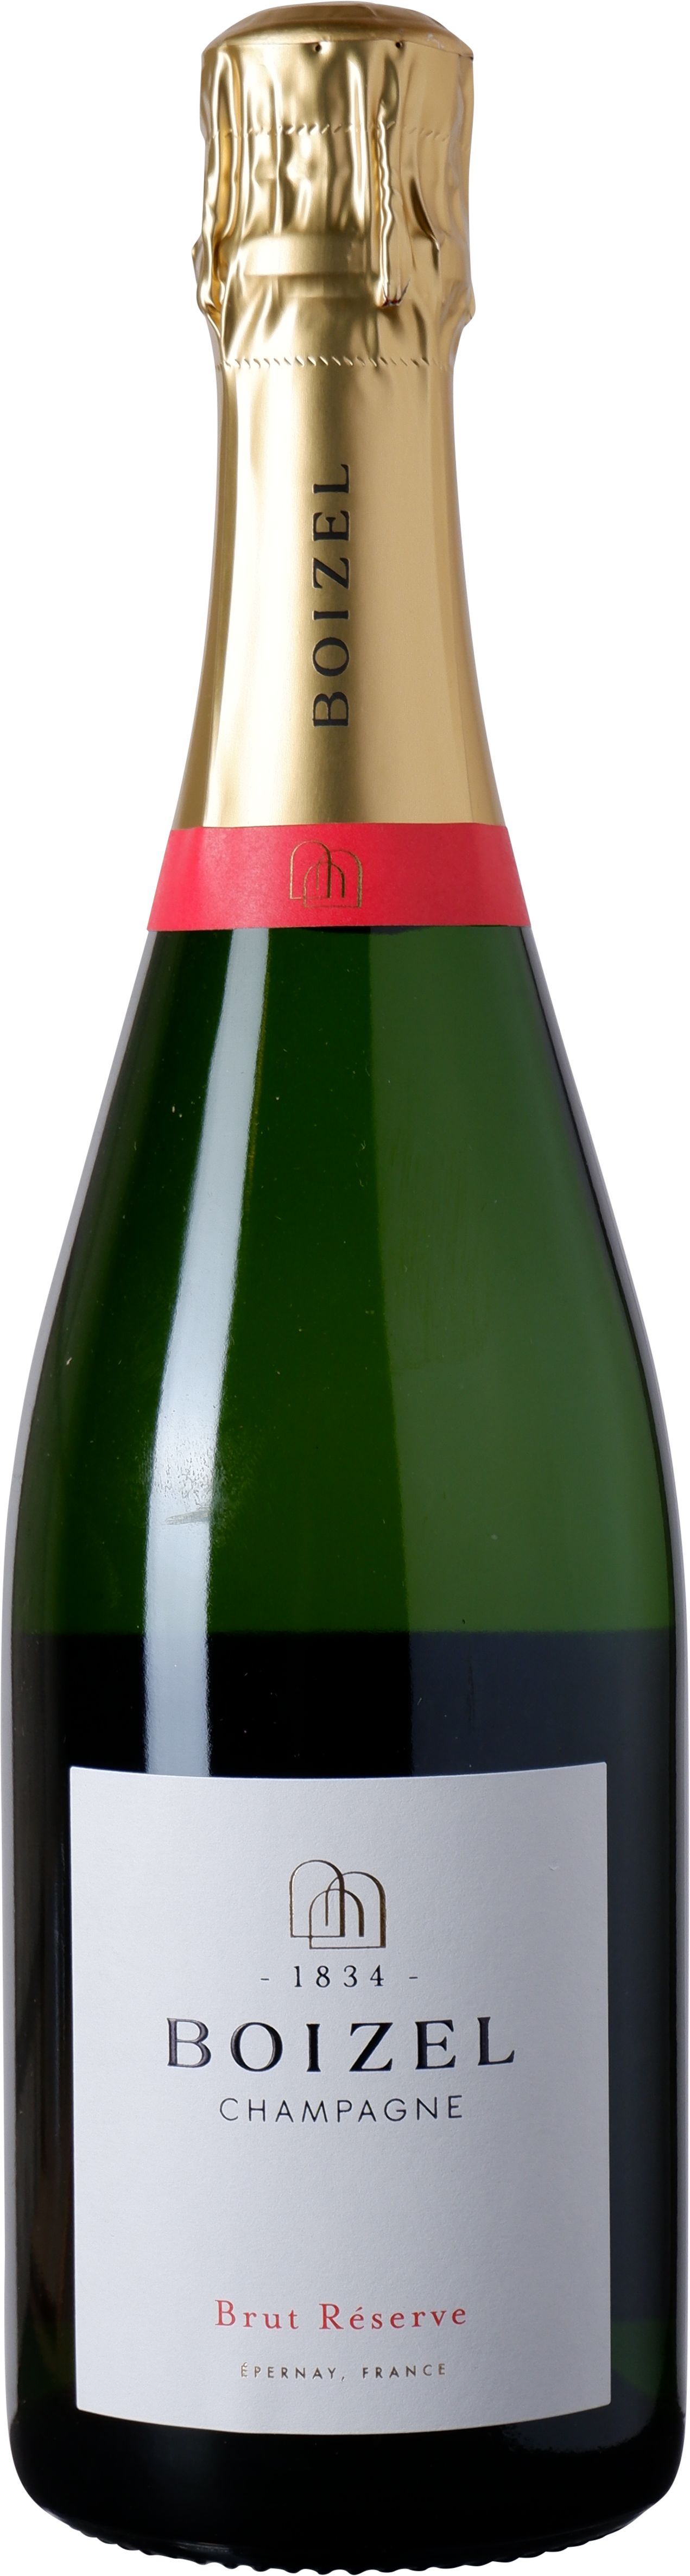 Boizel - Brut Réserve Champagne